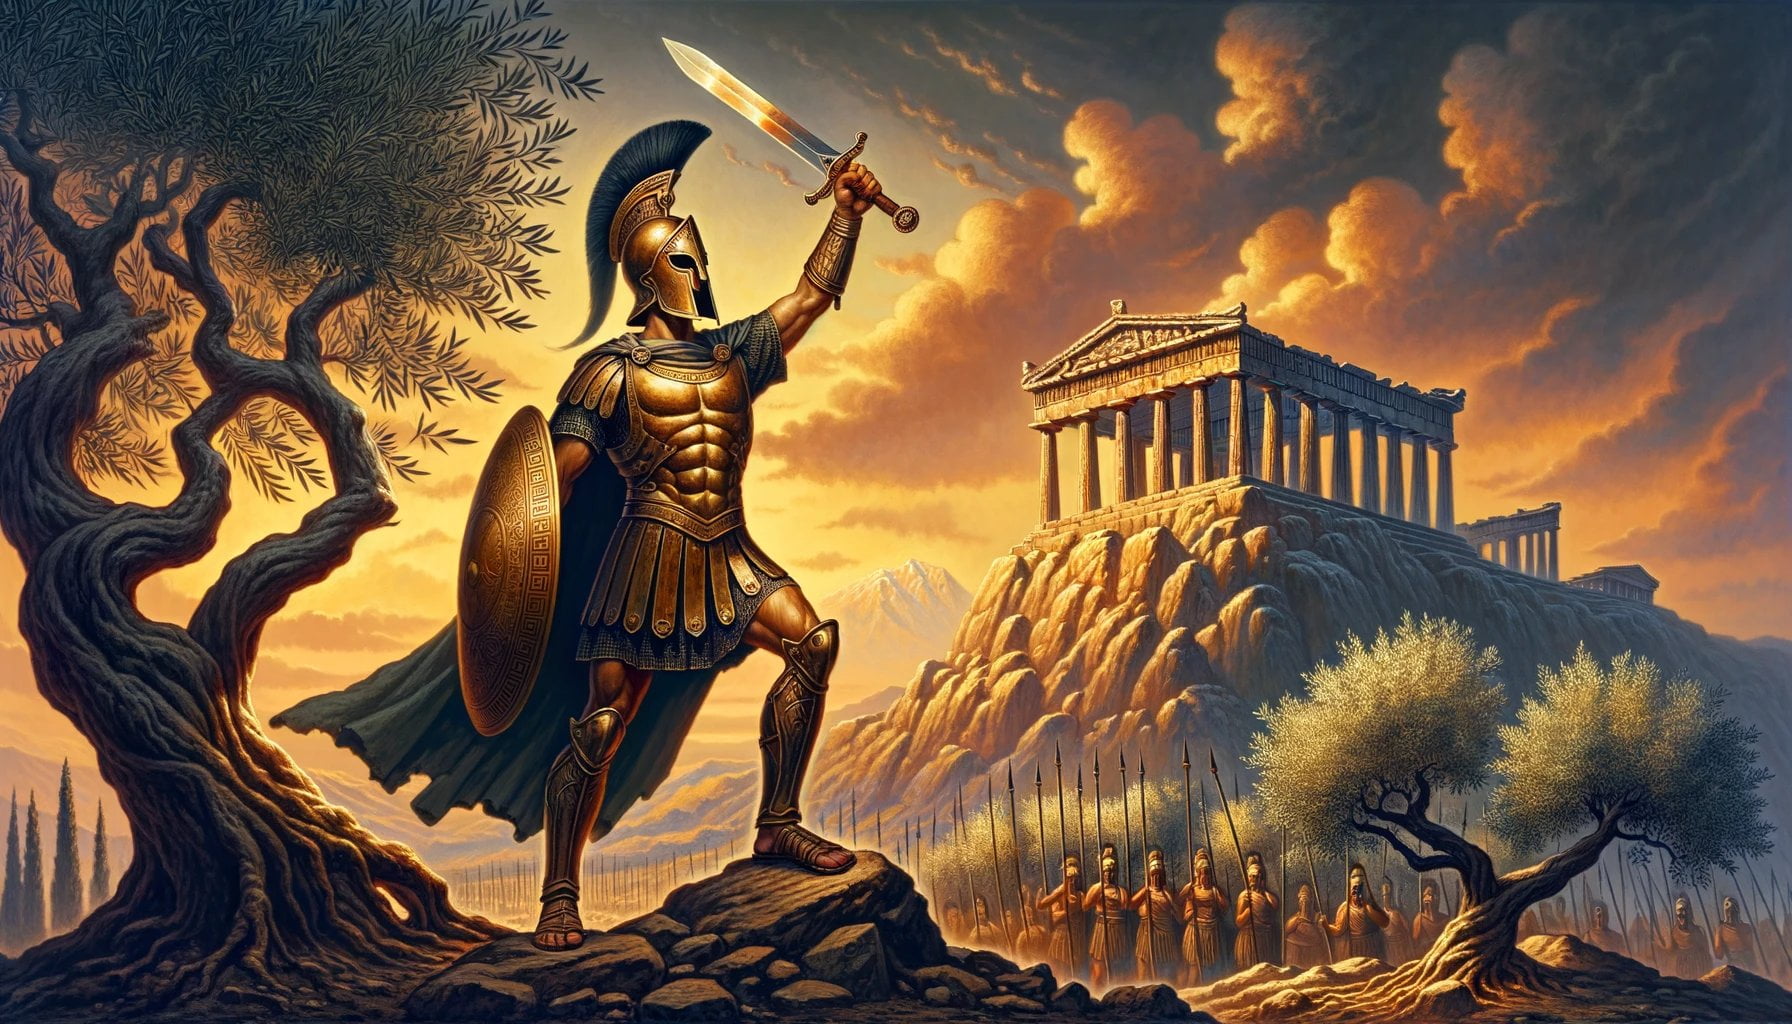 swords of ancient greece 1